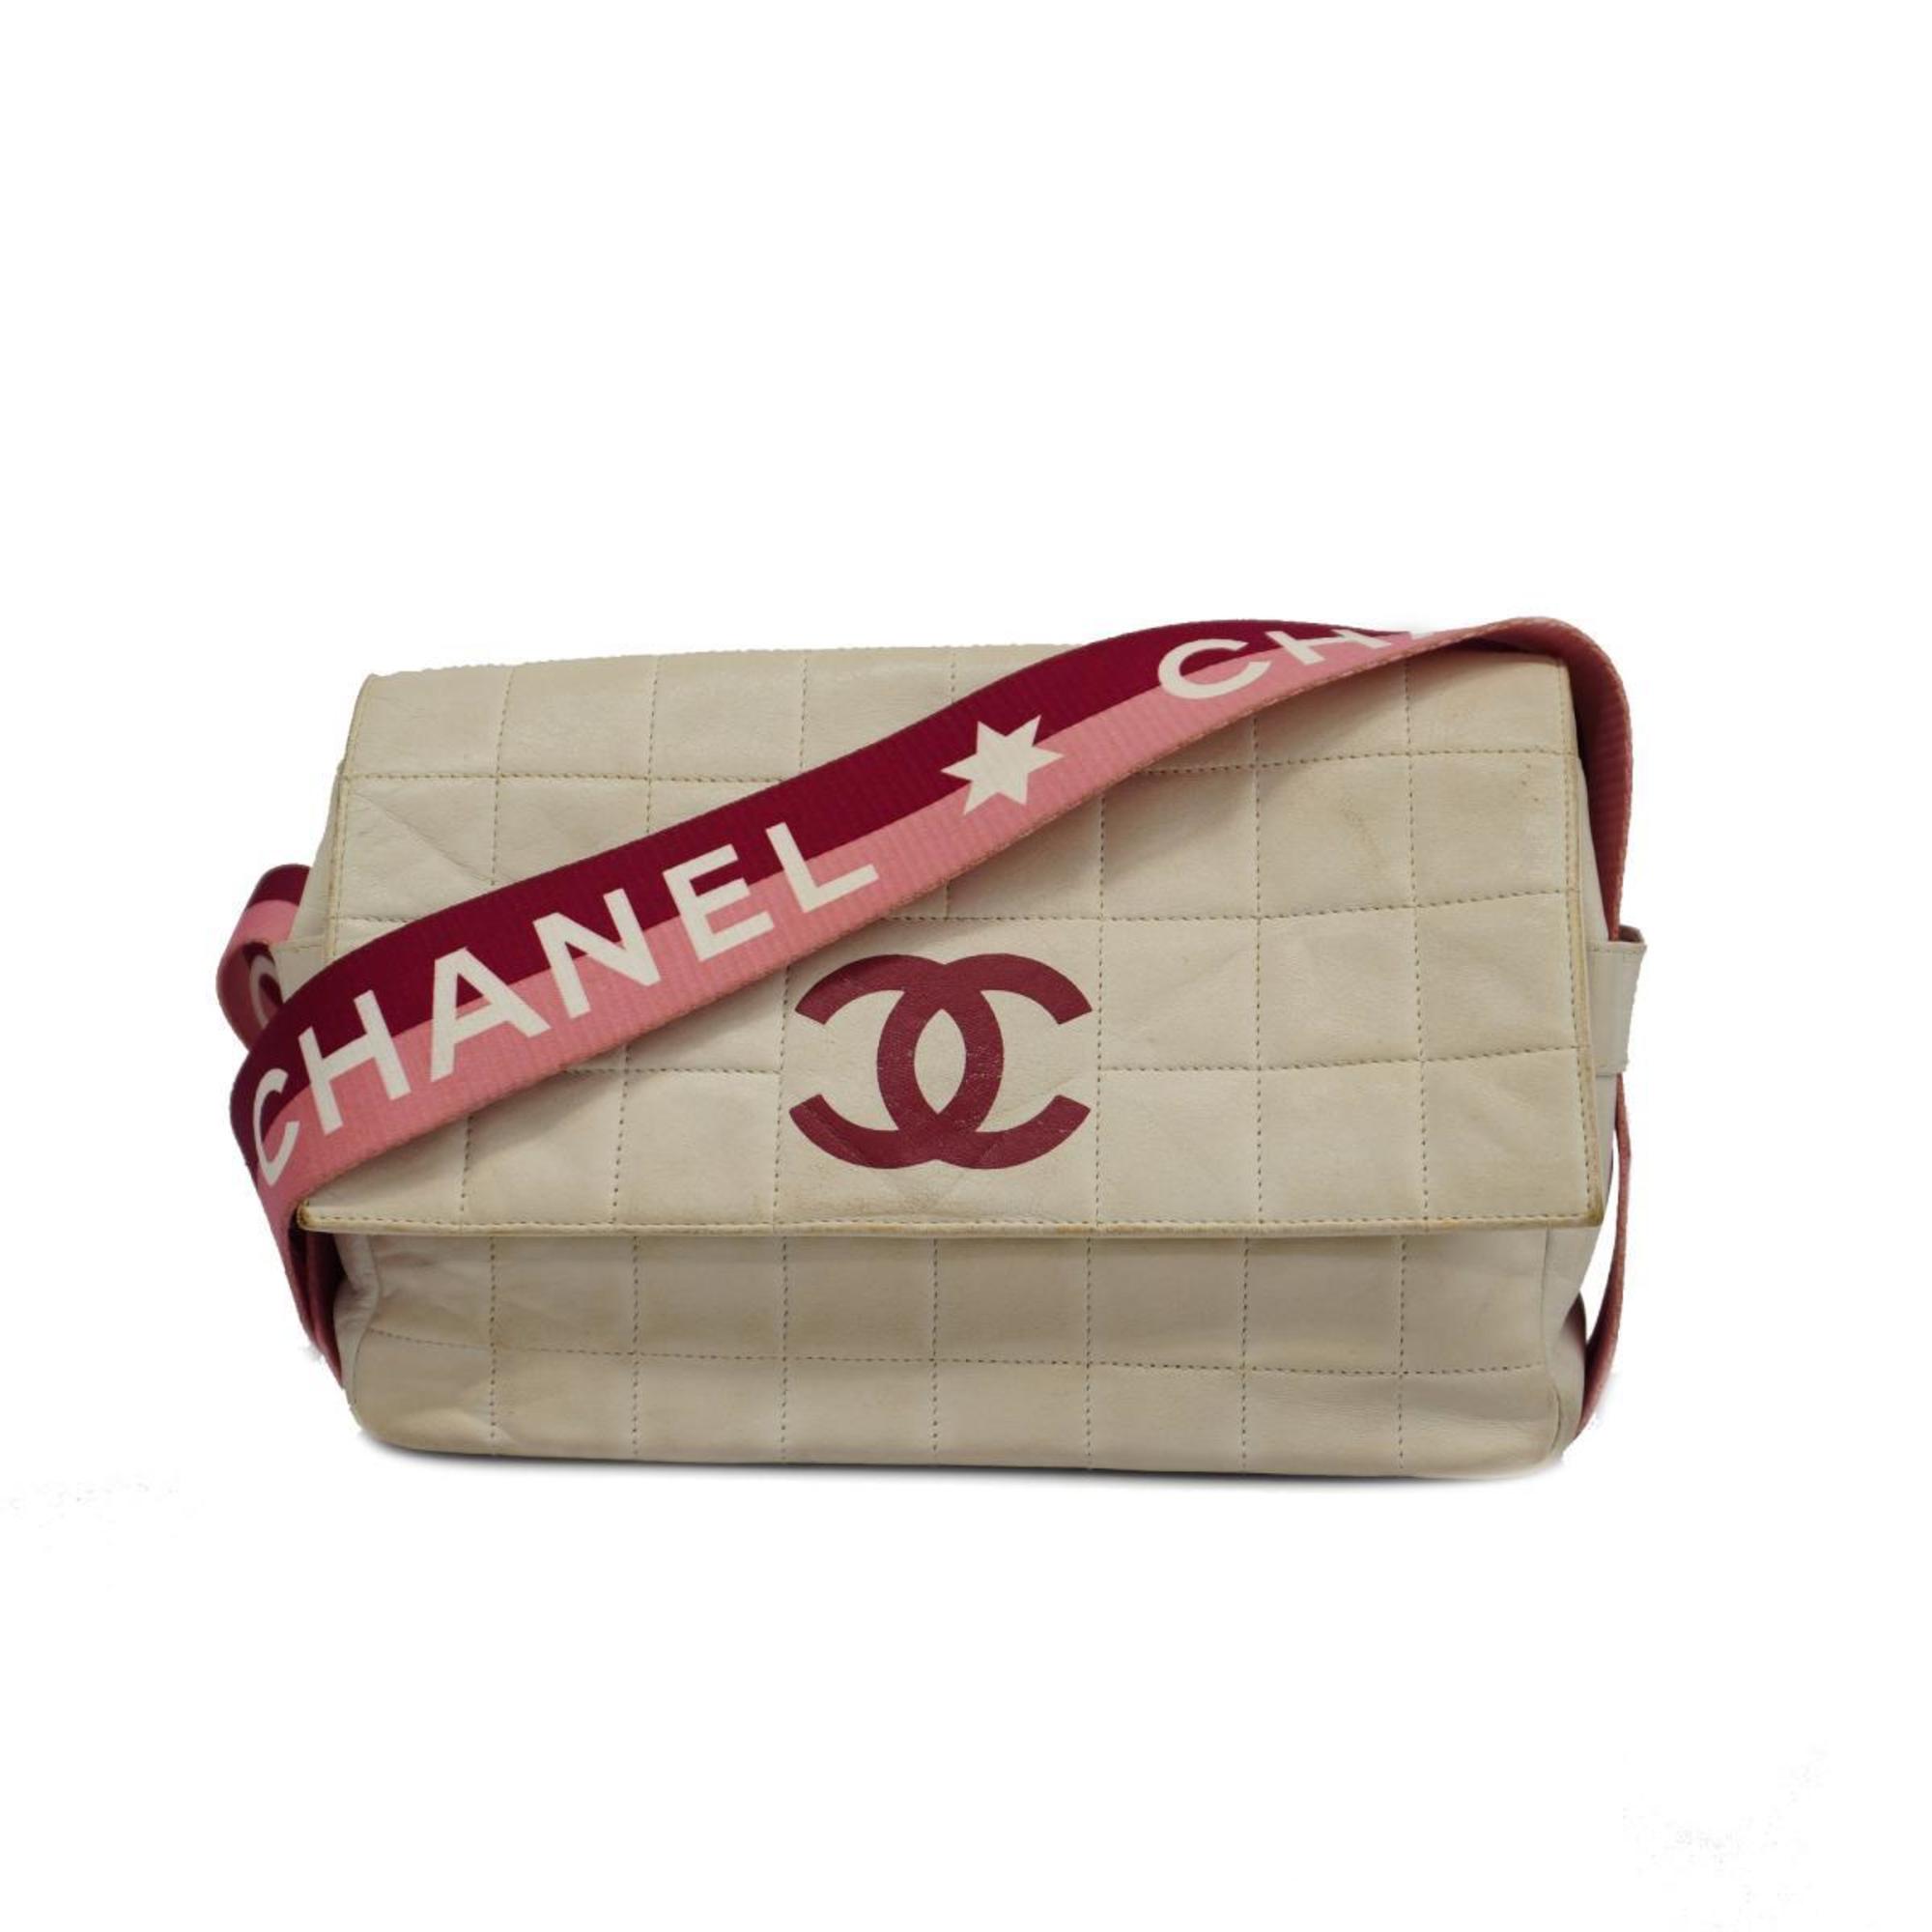 シャネル(Chanel) シャネル ショルダーバッグ チョコバー スポーツ ラムスキン ホワイト ピンク   レディース